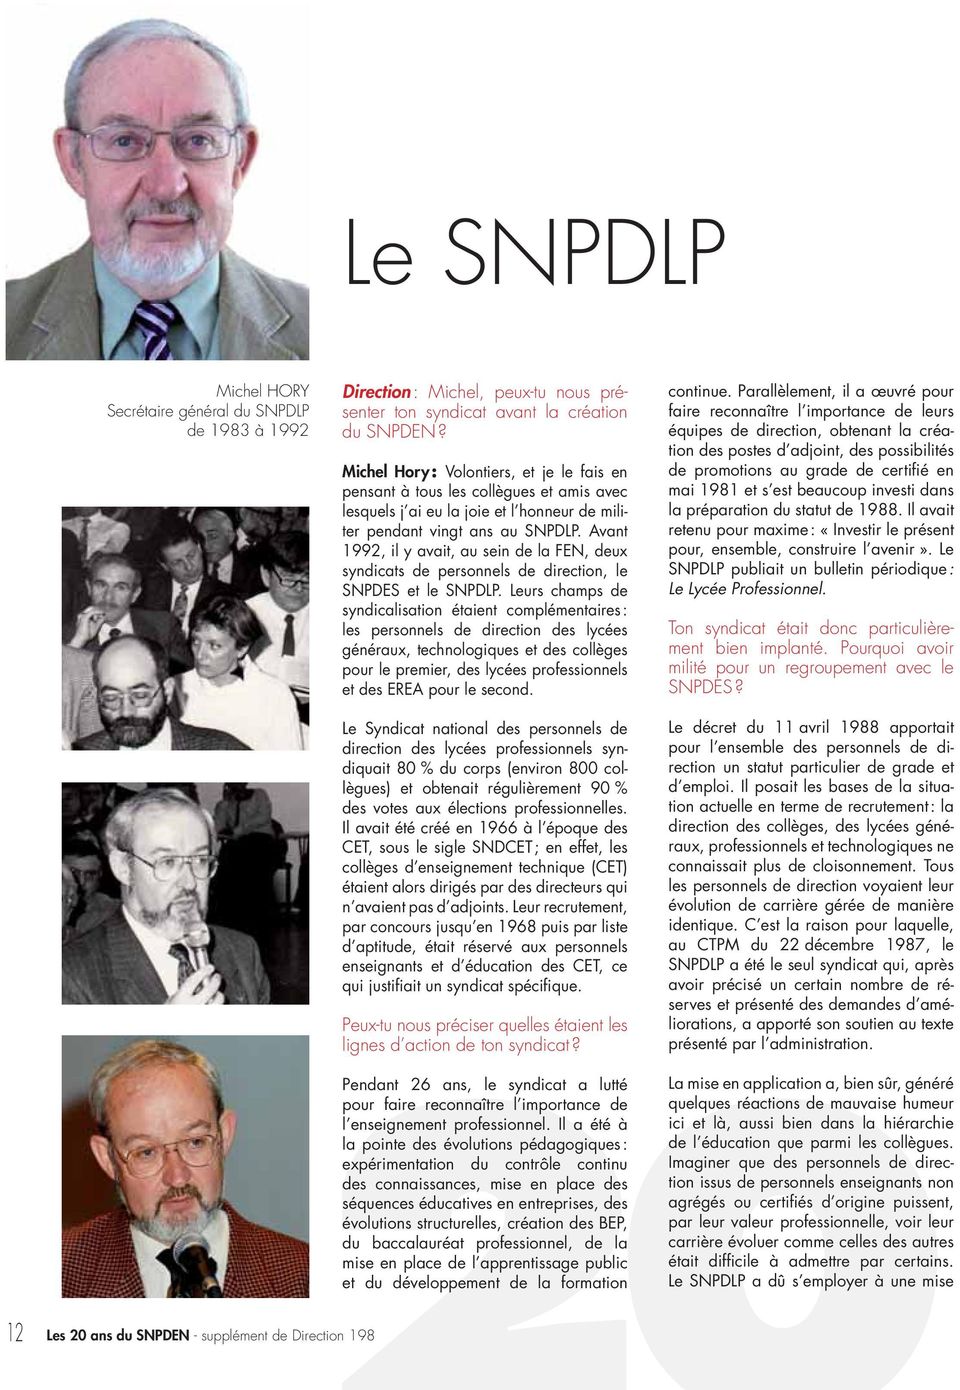 Avant 1992, il y avait, au sein de la FEN, deux syndicats de personnels de direction, le SNPDES et le SNPDLP.